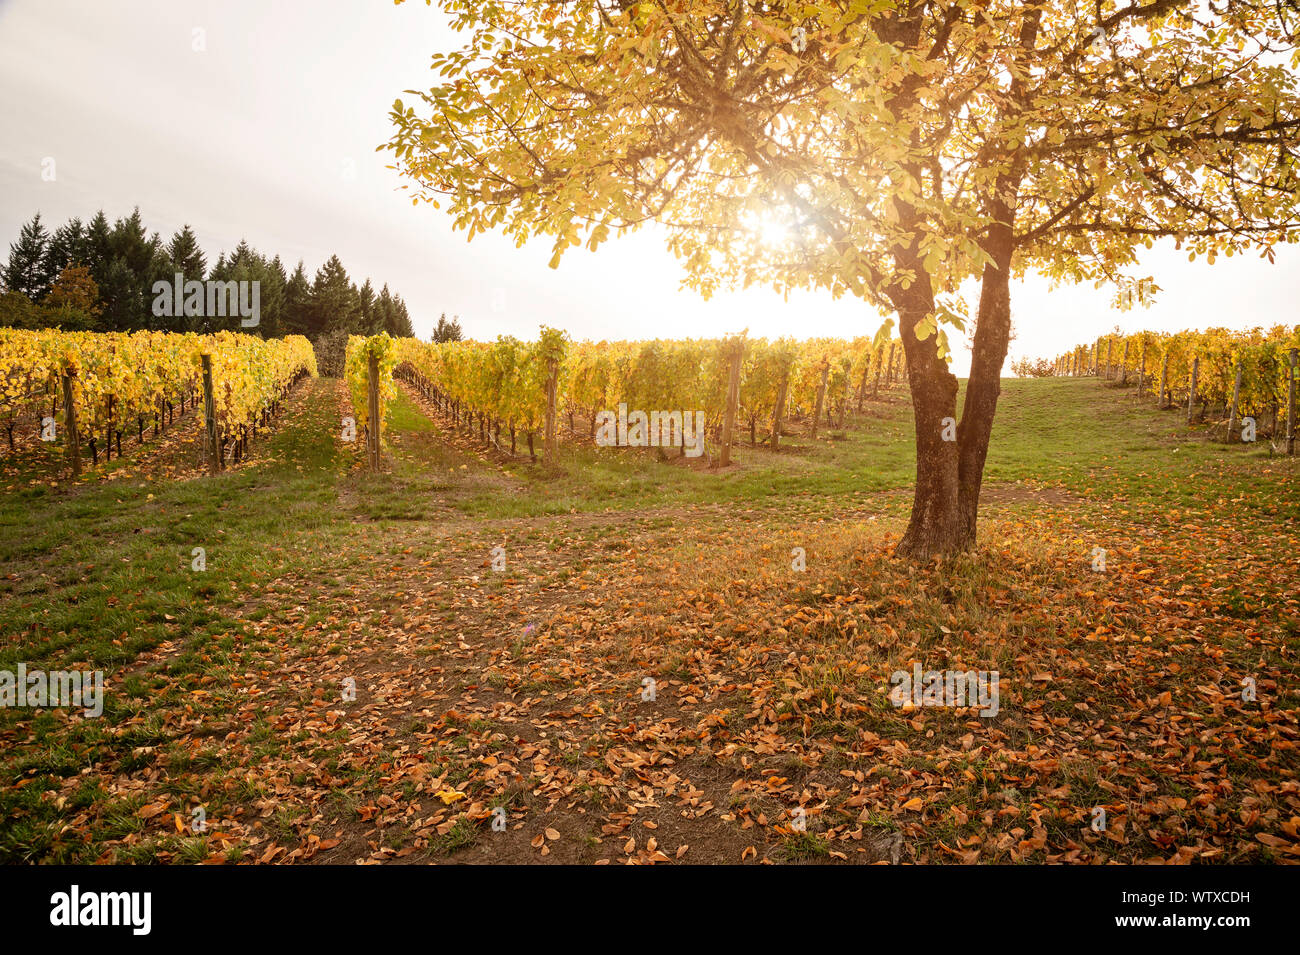 Vineyard in Autumn Stock Photo